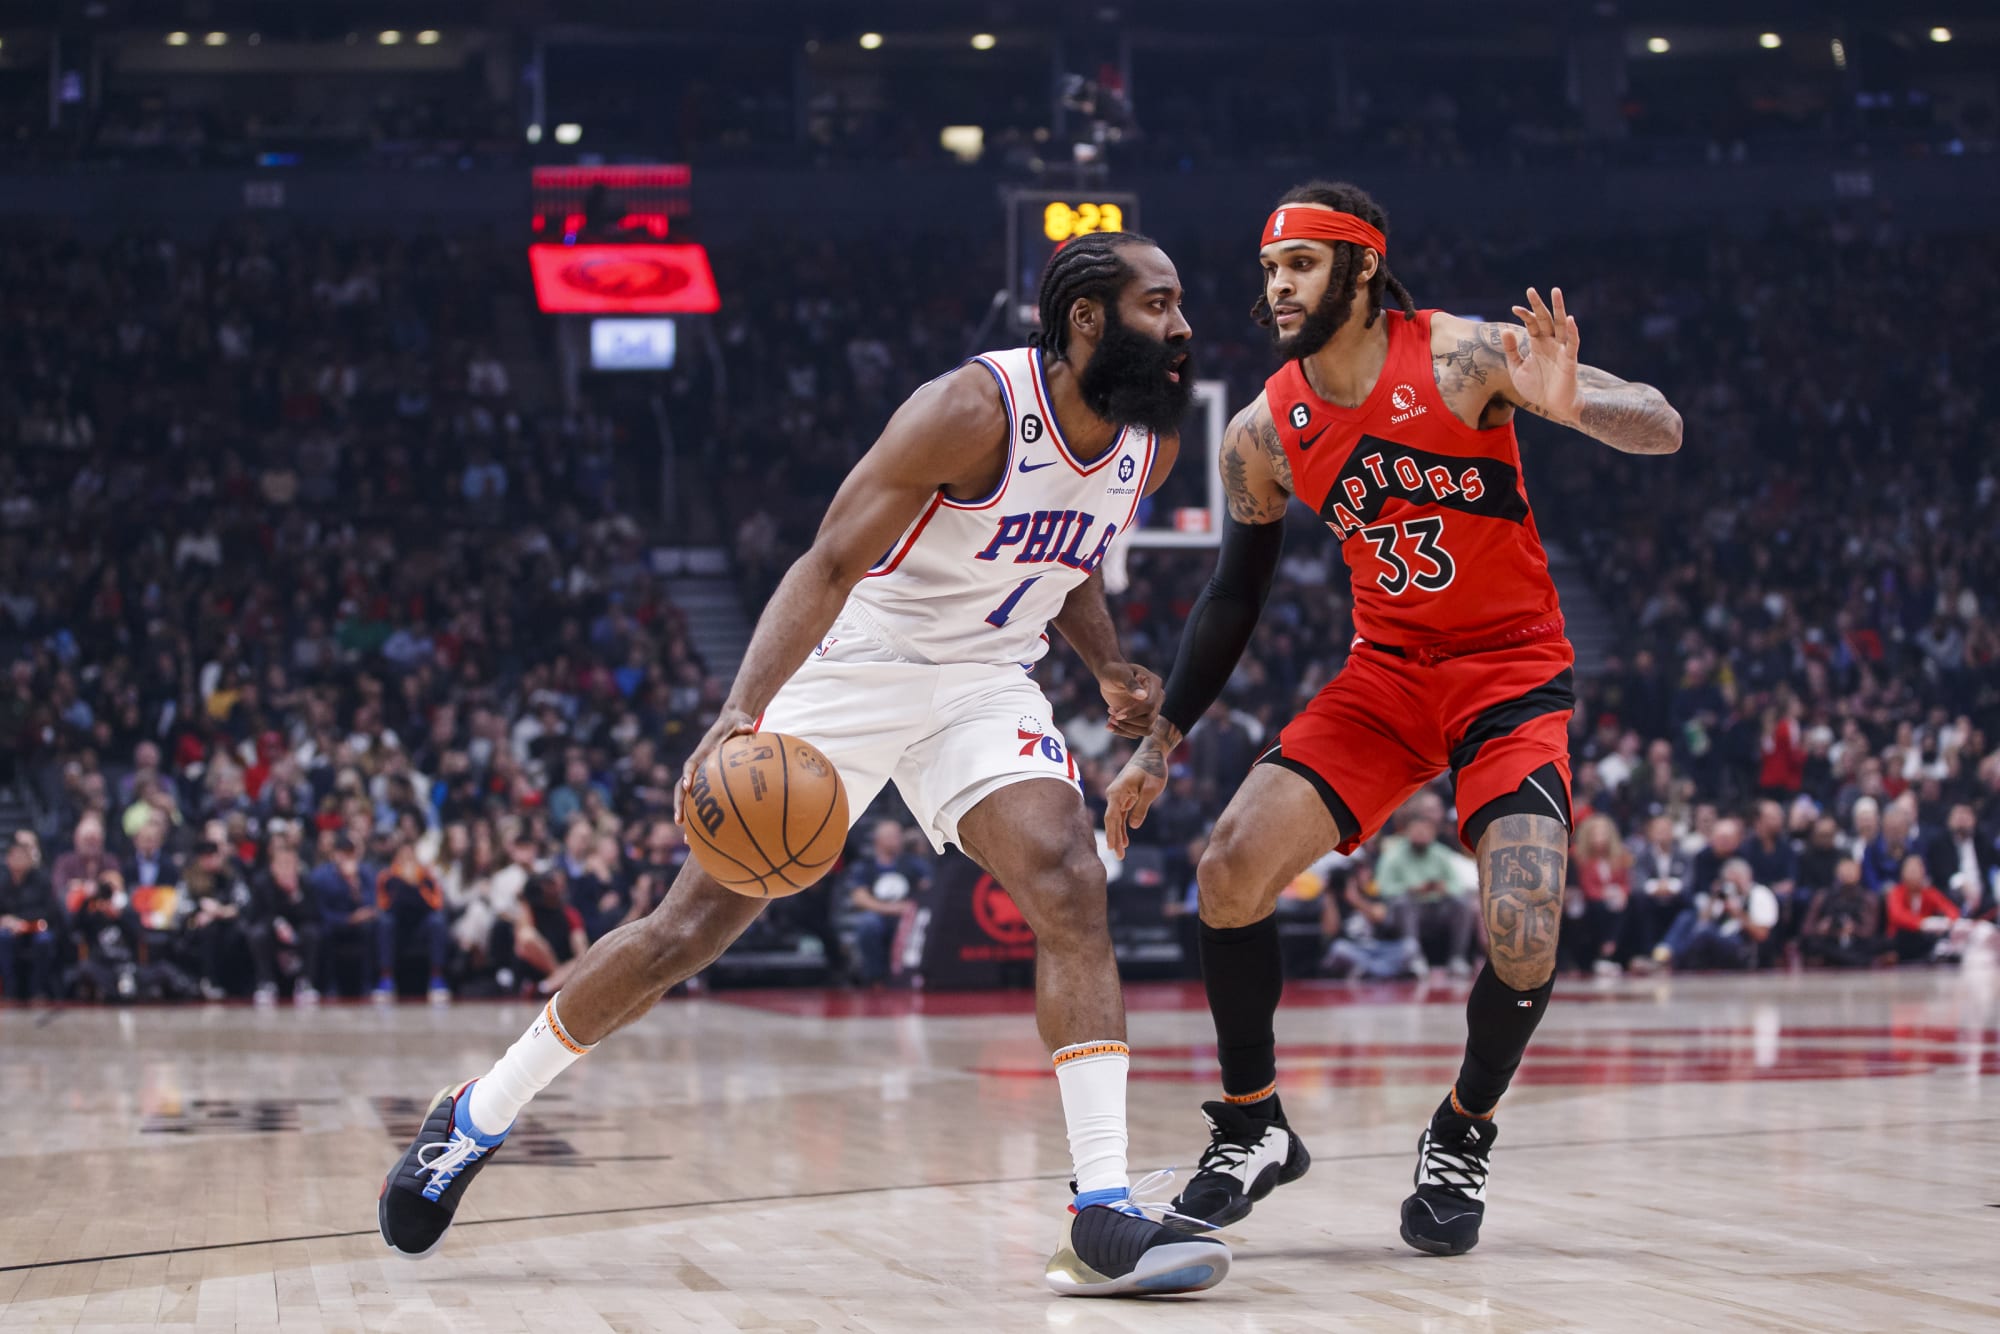 NBA rumors: James Harden departure would be dream for Raptors, Atlantic Division